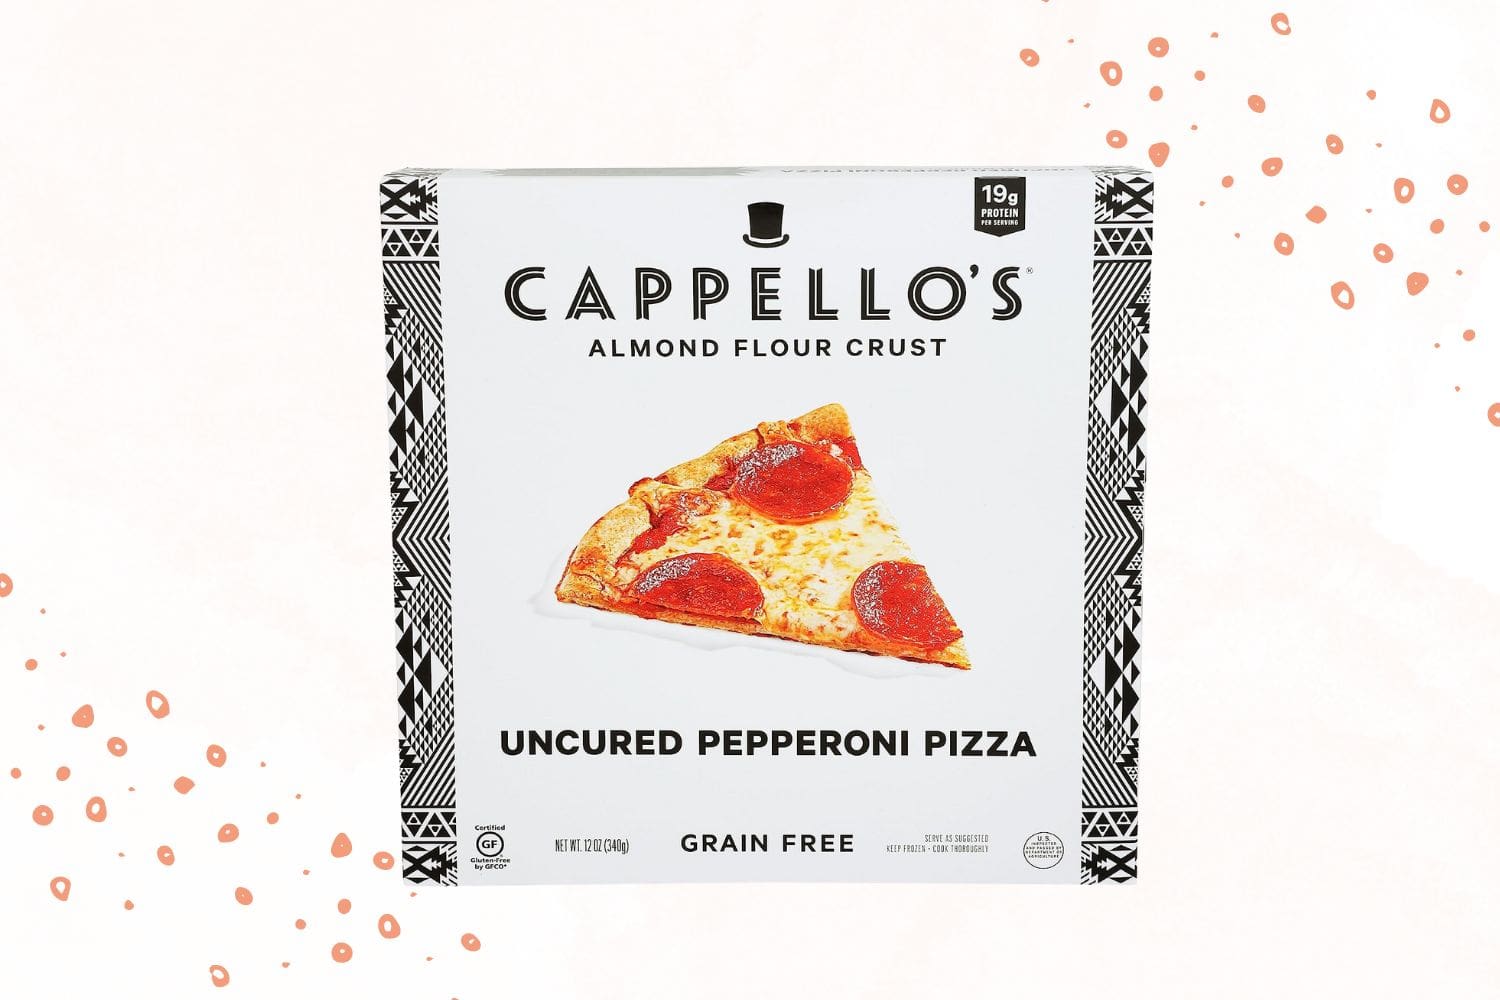 Cappello's Grain-Free Almond Flour Crust Uncured Pepperoni Pizza